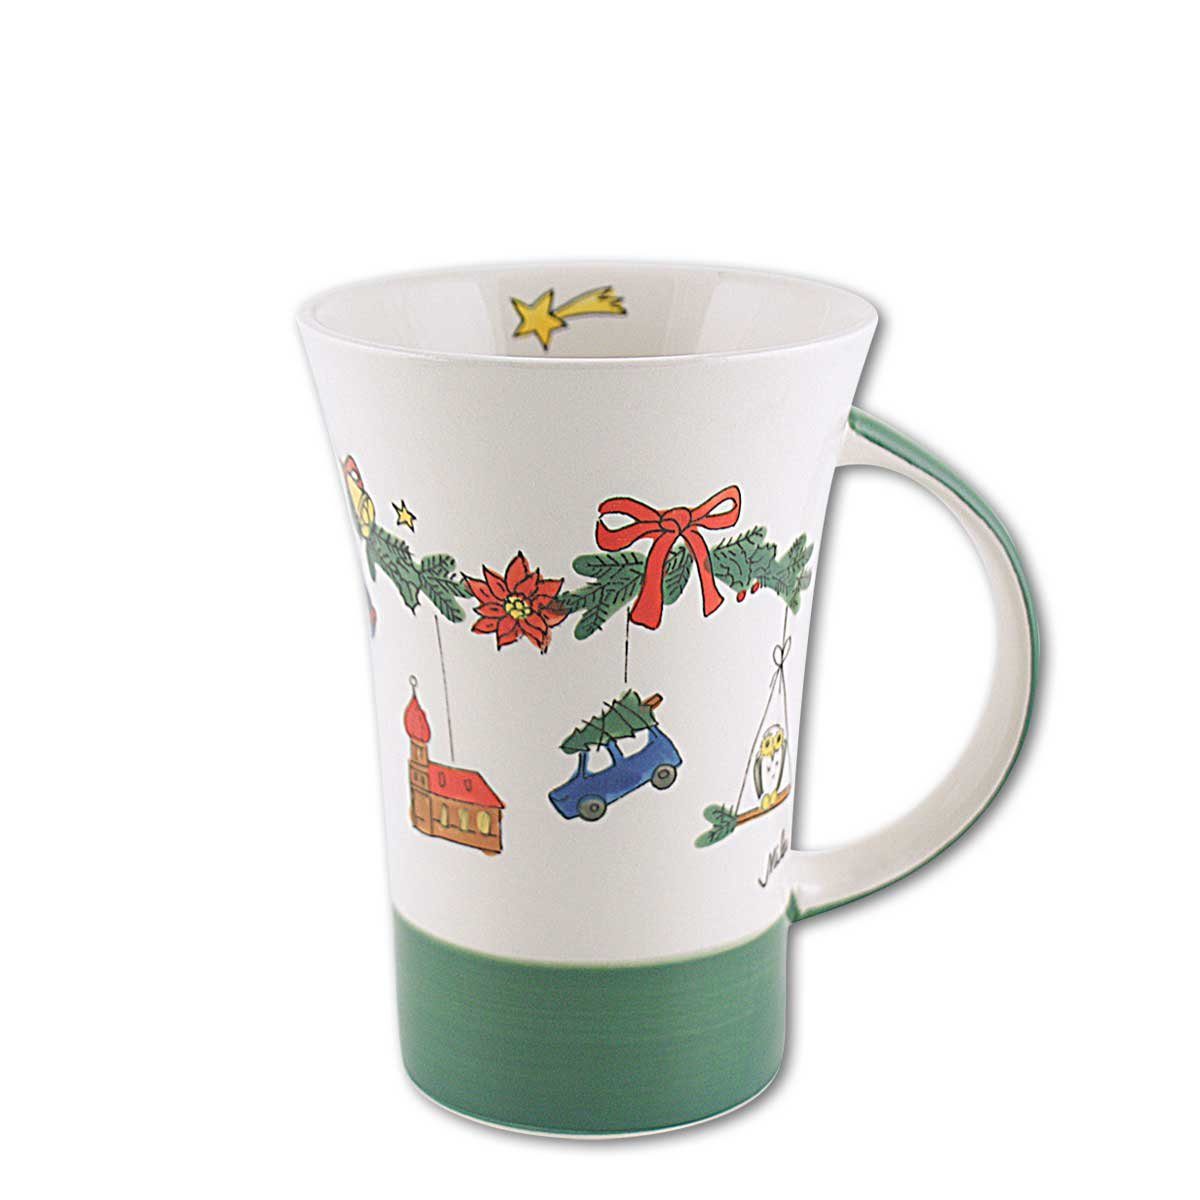 Mila Coffee Keramik Pot, Keramik-Becher, Mila Weihnachtszauber, Becher